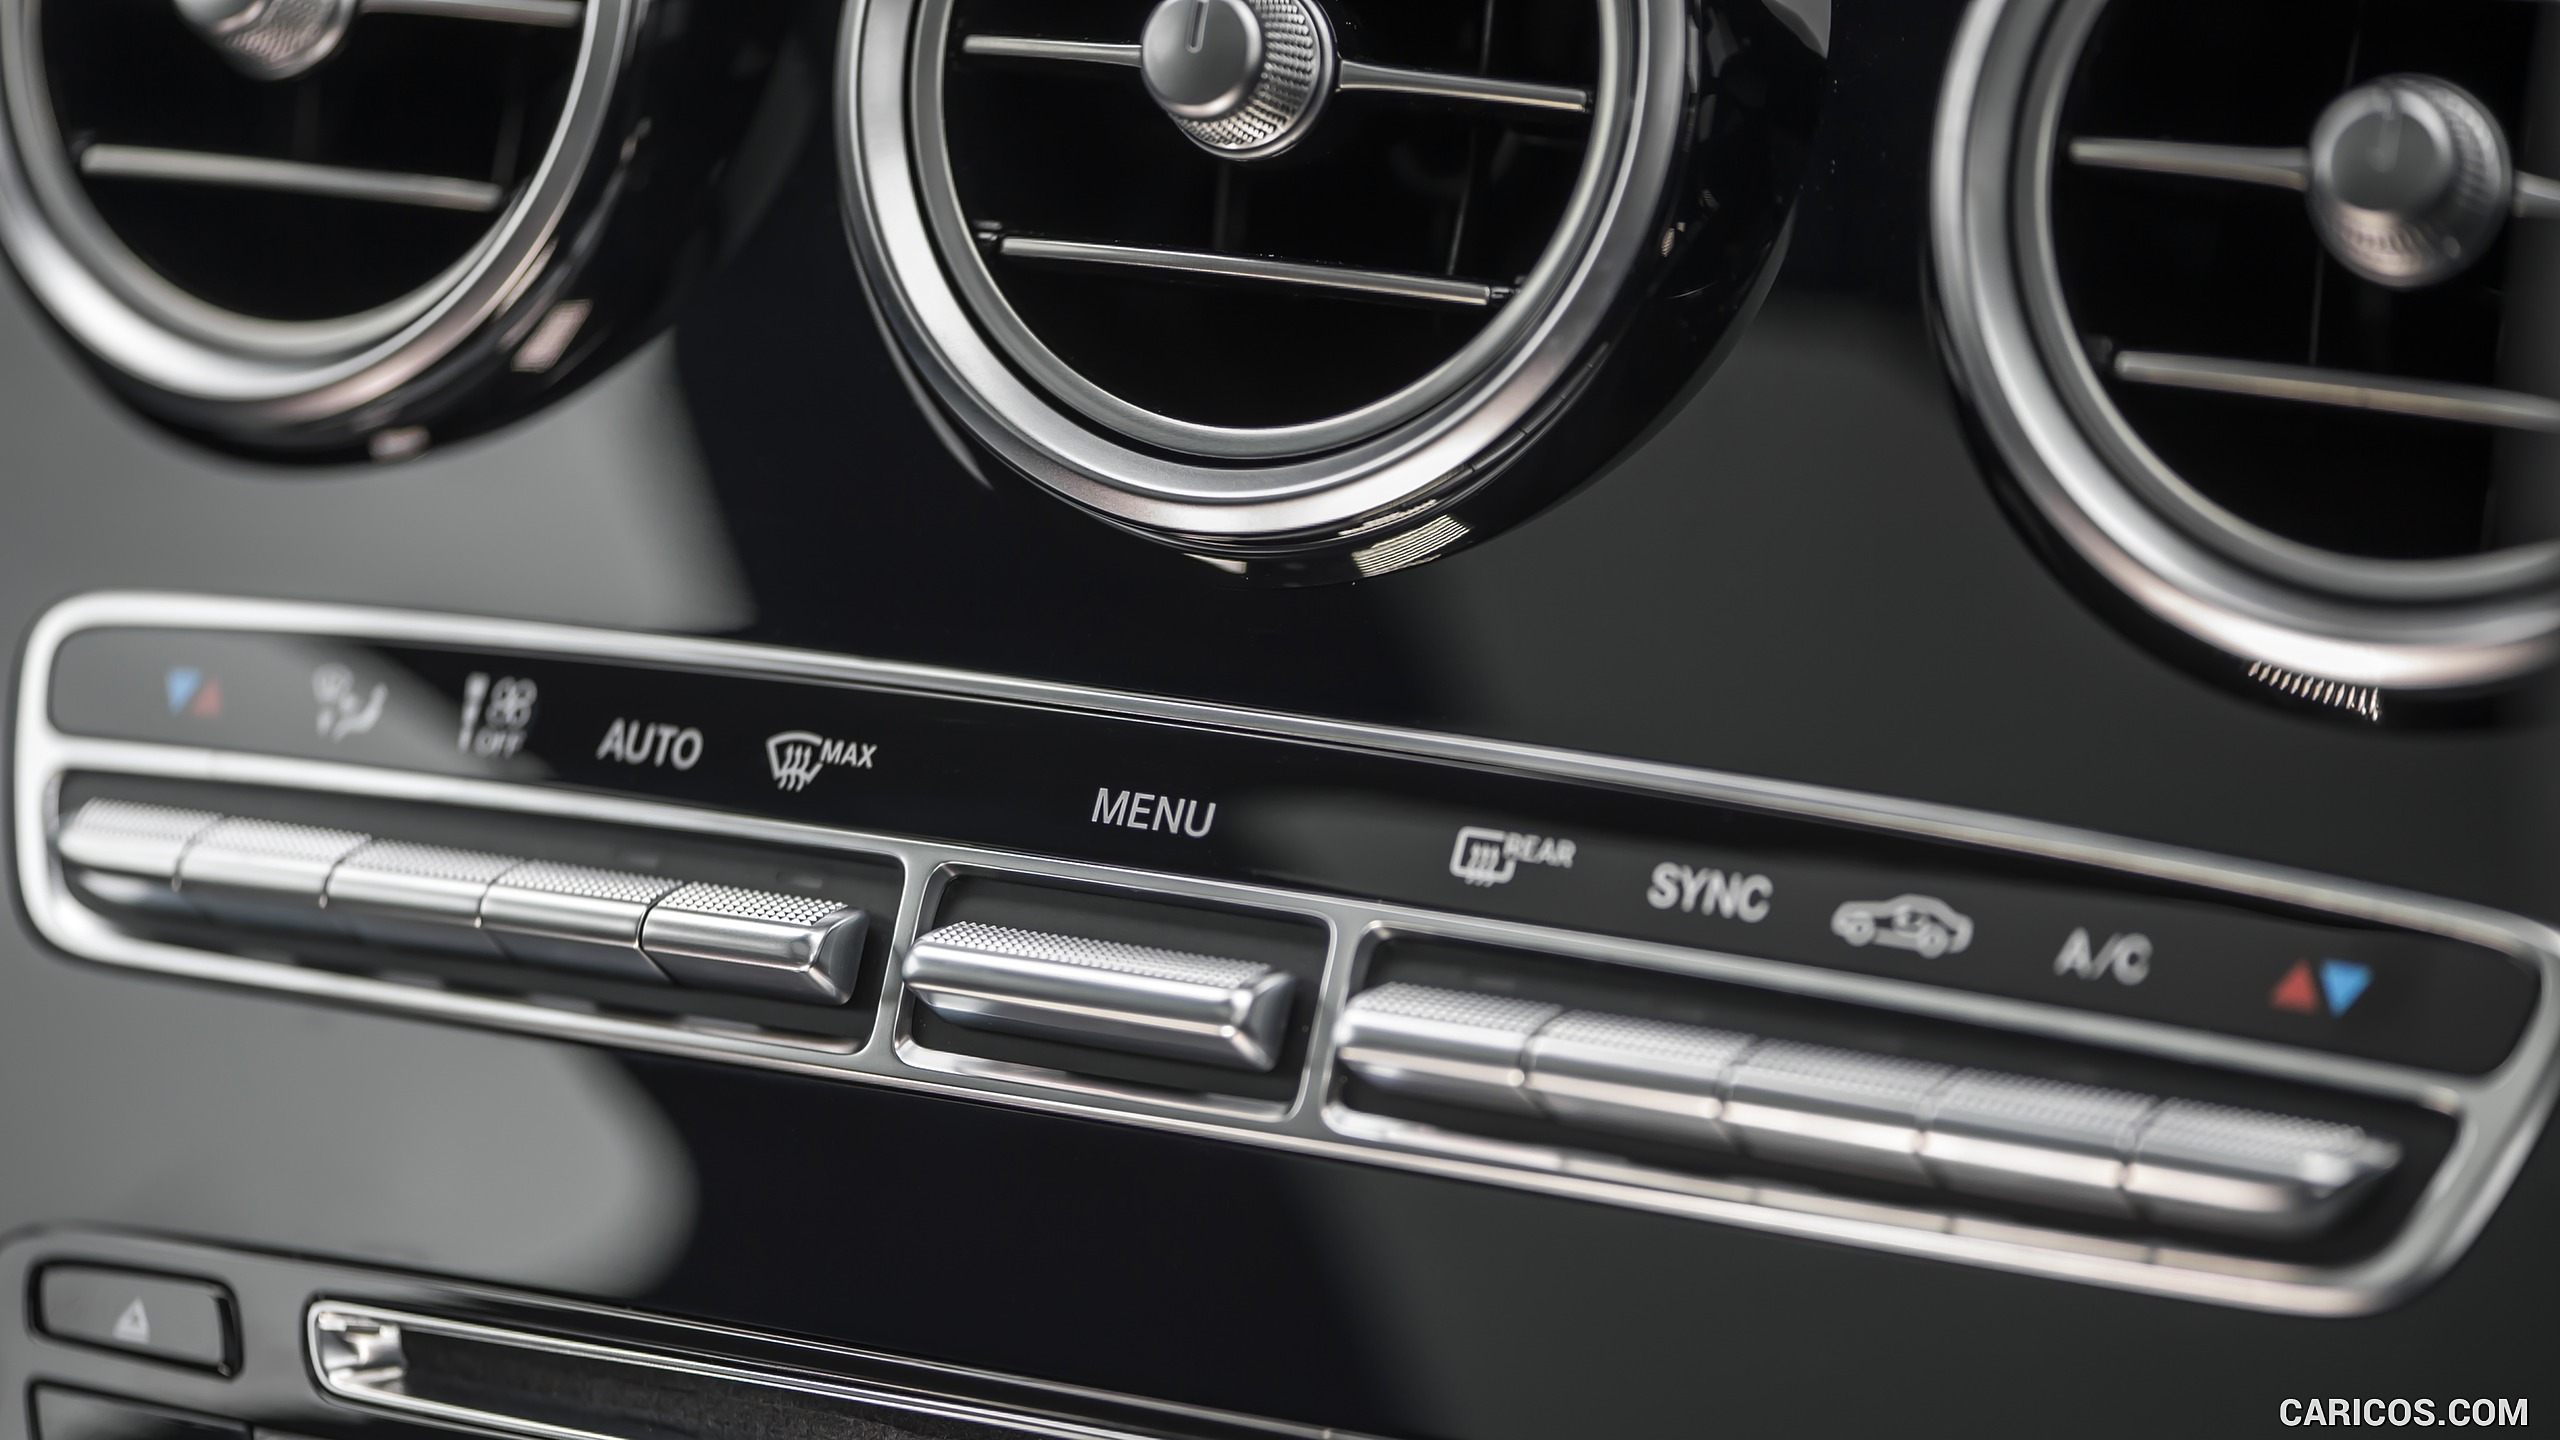 2016 Mercedes-Benz GLC 250d 4MATIC AMG Line (UK-Spec) - Interior, Controls, #107 of 130